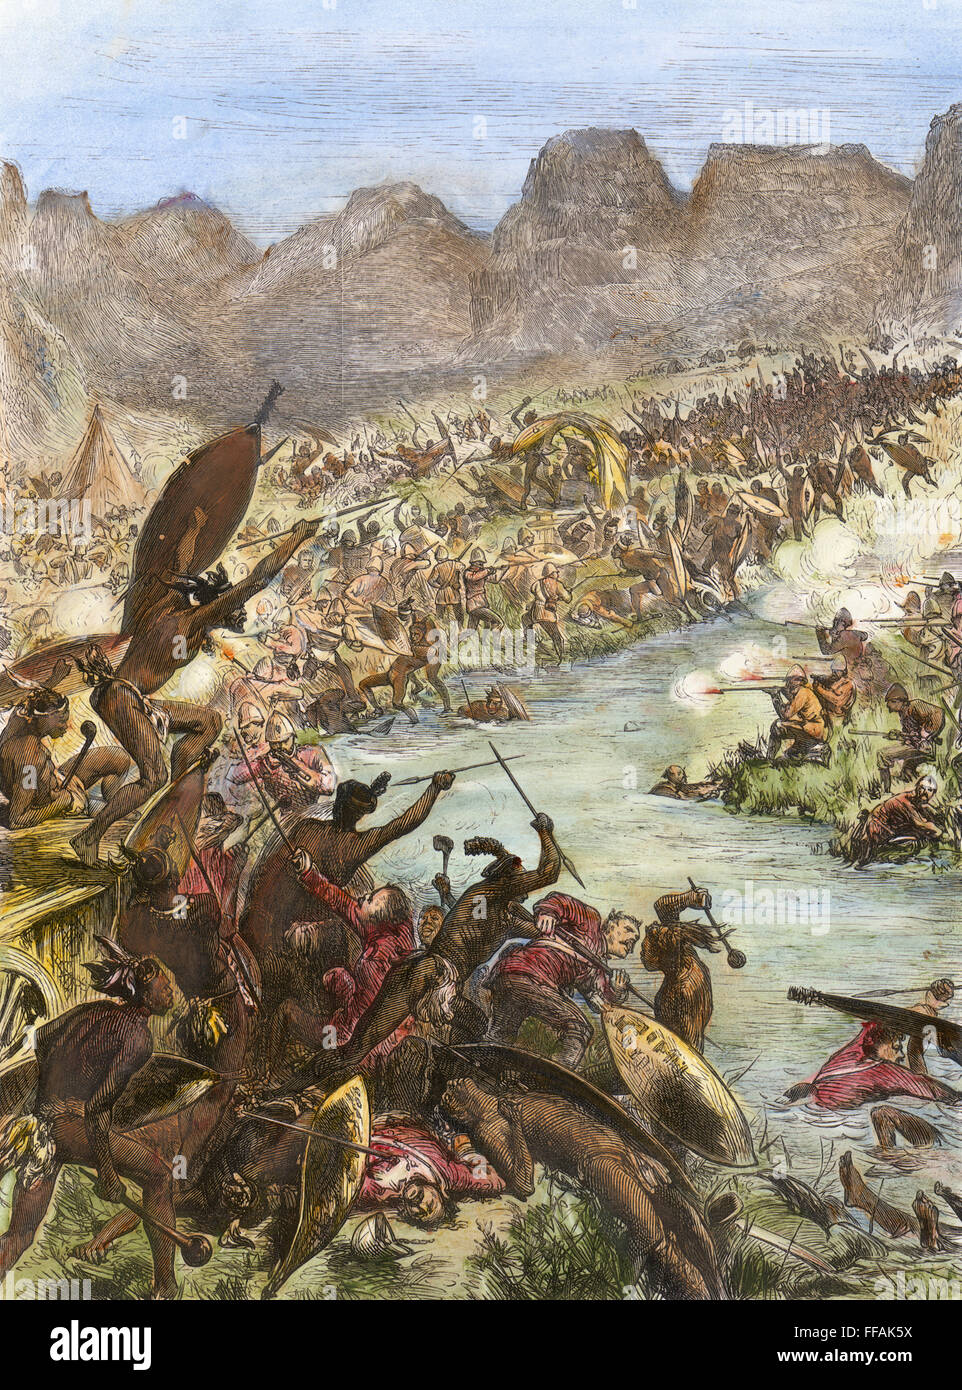 Guerra ZULU, 1879. /NZulu warriors attaccare una scorta dell'ottantesimo reggimento presso il fiume Intombi: incisione su legno da un contemporaneo quotidiano inglese. Foto Stock